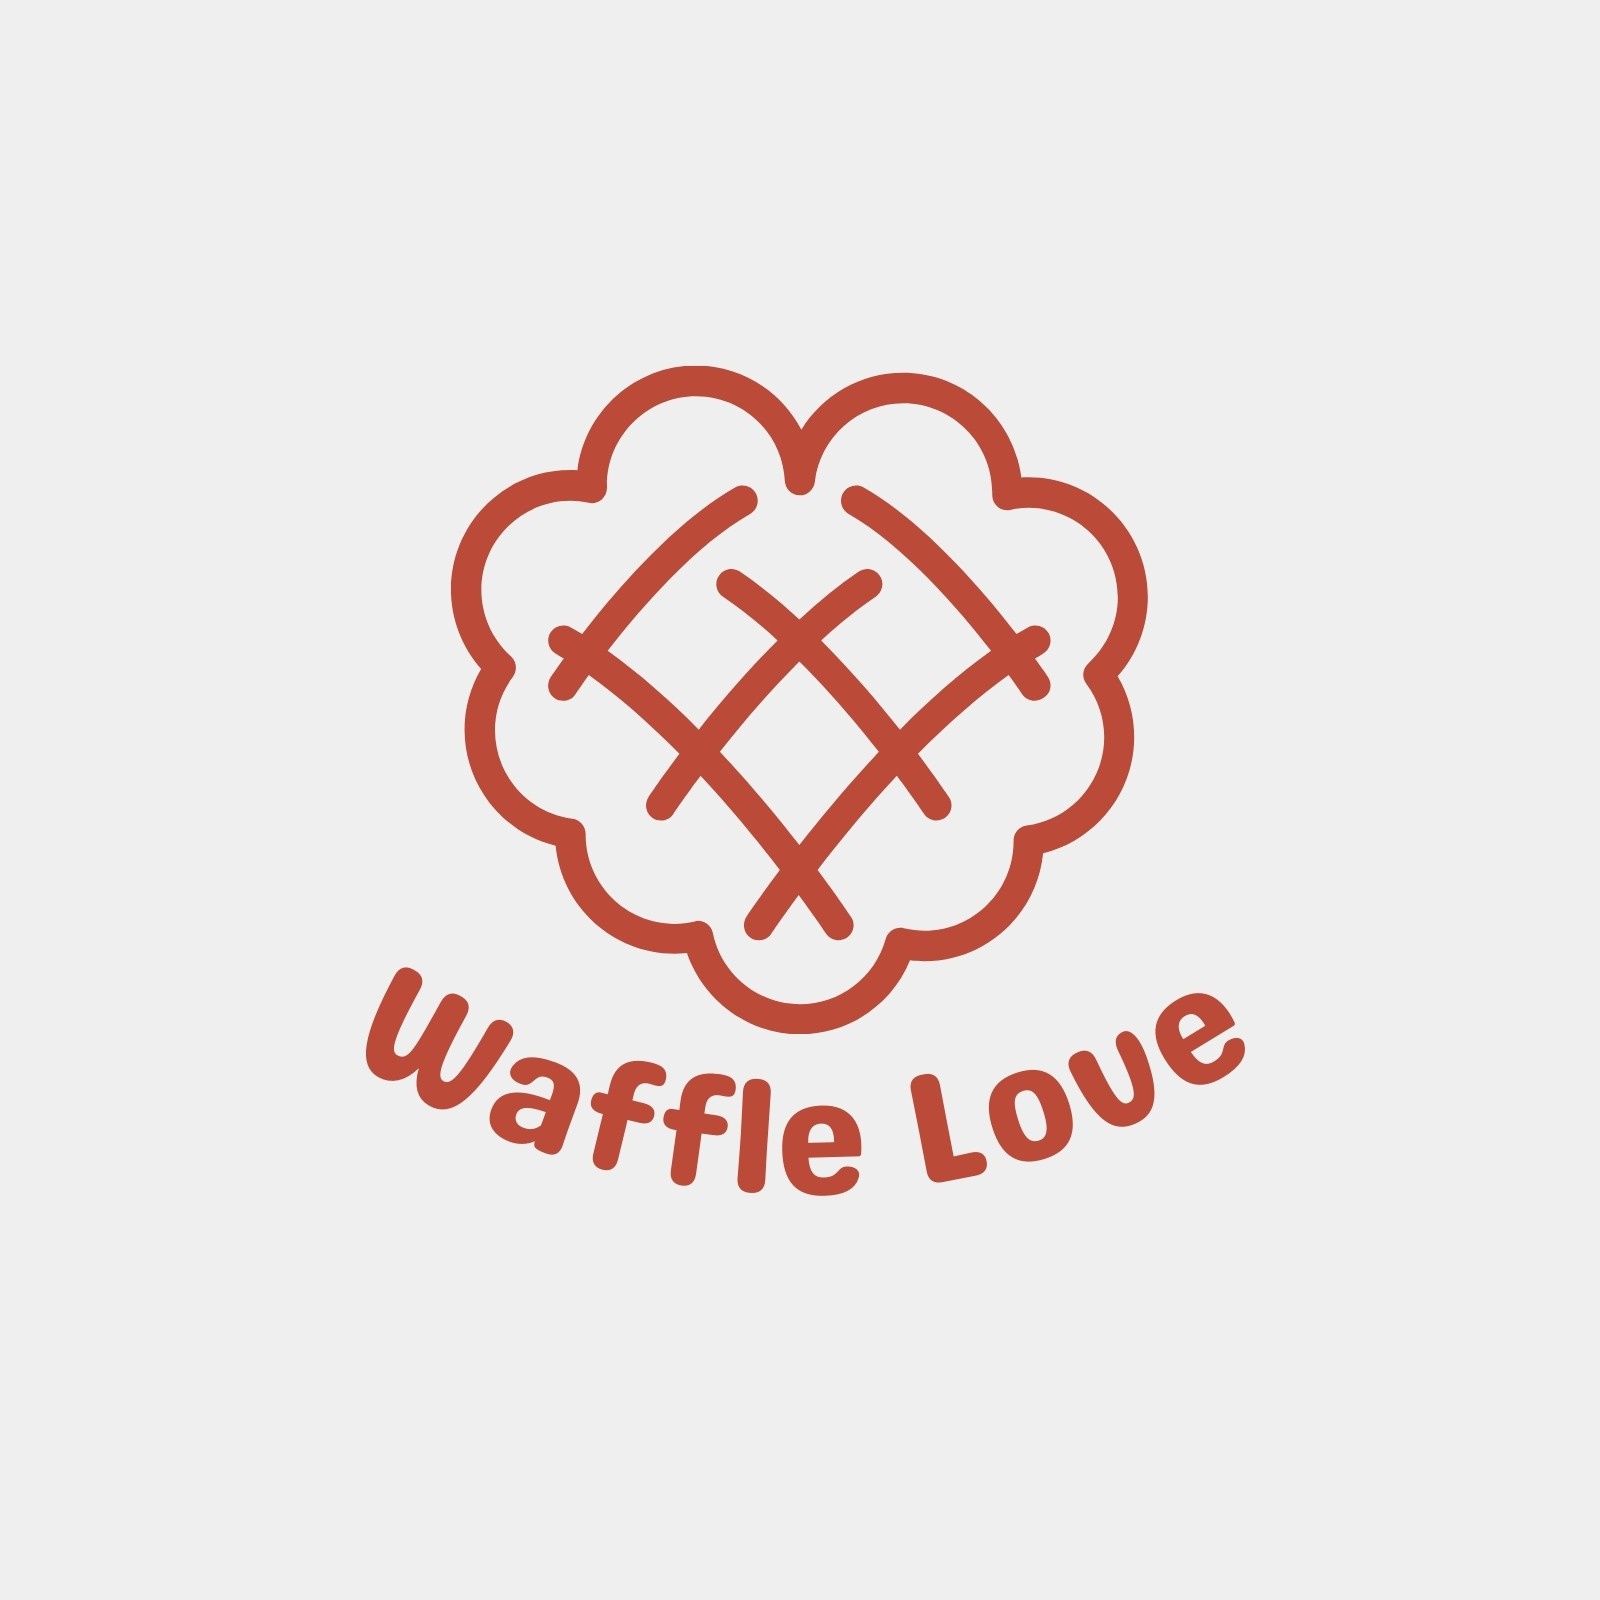 Waffle Love Logo, Waffles Hearts Bakery Logo Design